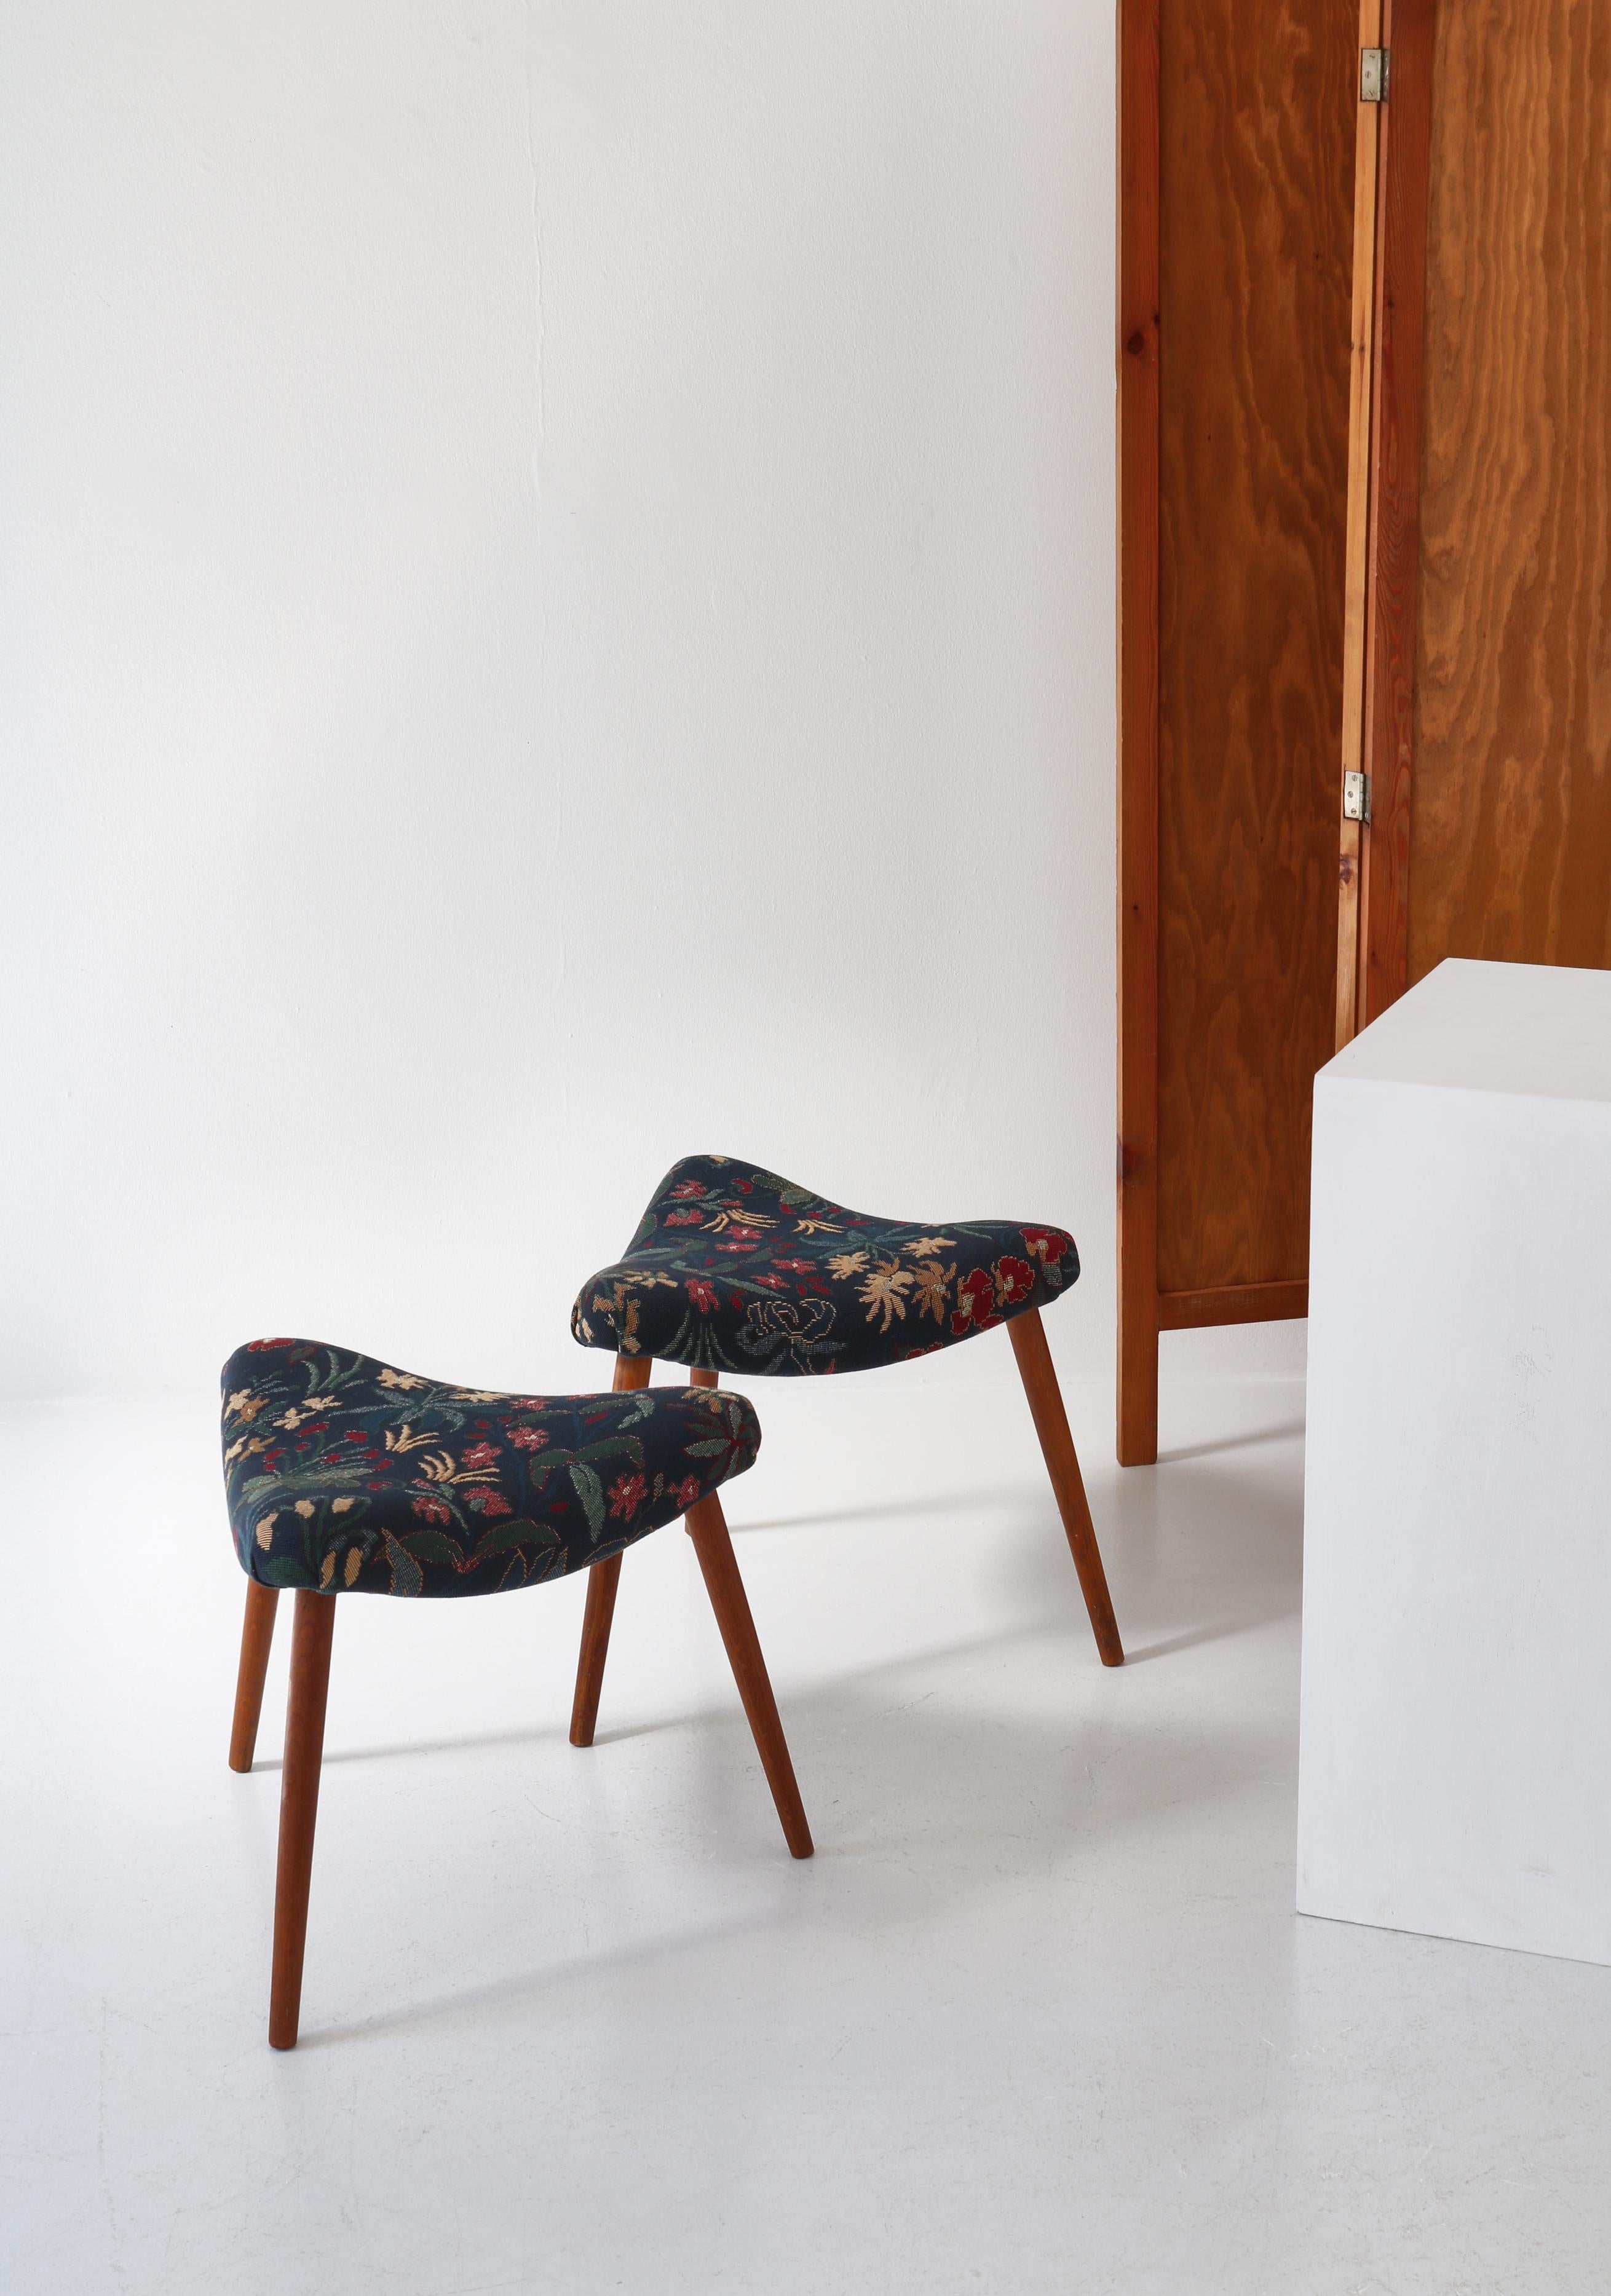 Ein Paar dreieckige Hocker, hergestellt von einem dänischen Tischler in den 1950er Jahren. Die Hocker bestehen aus einem eleganten, geschwungenen Holzrahmen, der mit einem einzigartigen, handgewebten Vintage-Wandteppich mit Blumenmotiven neu